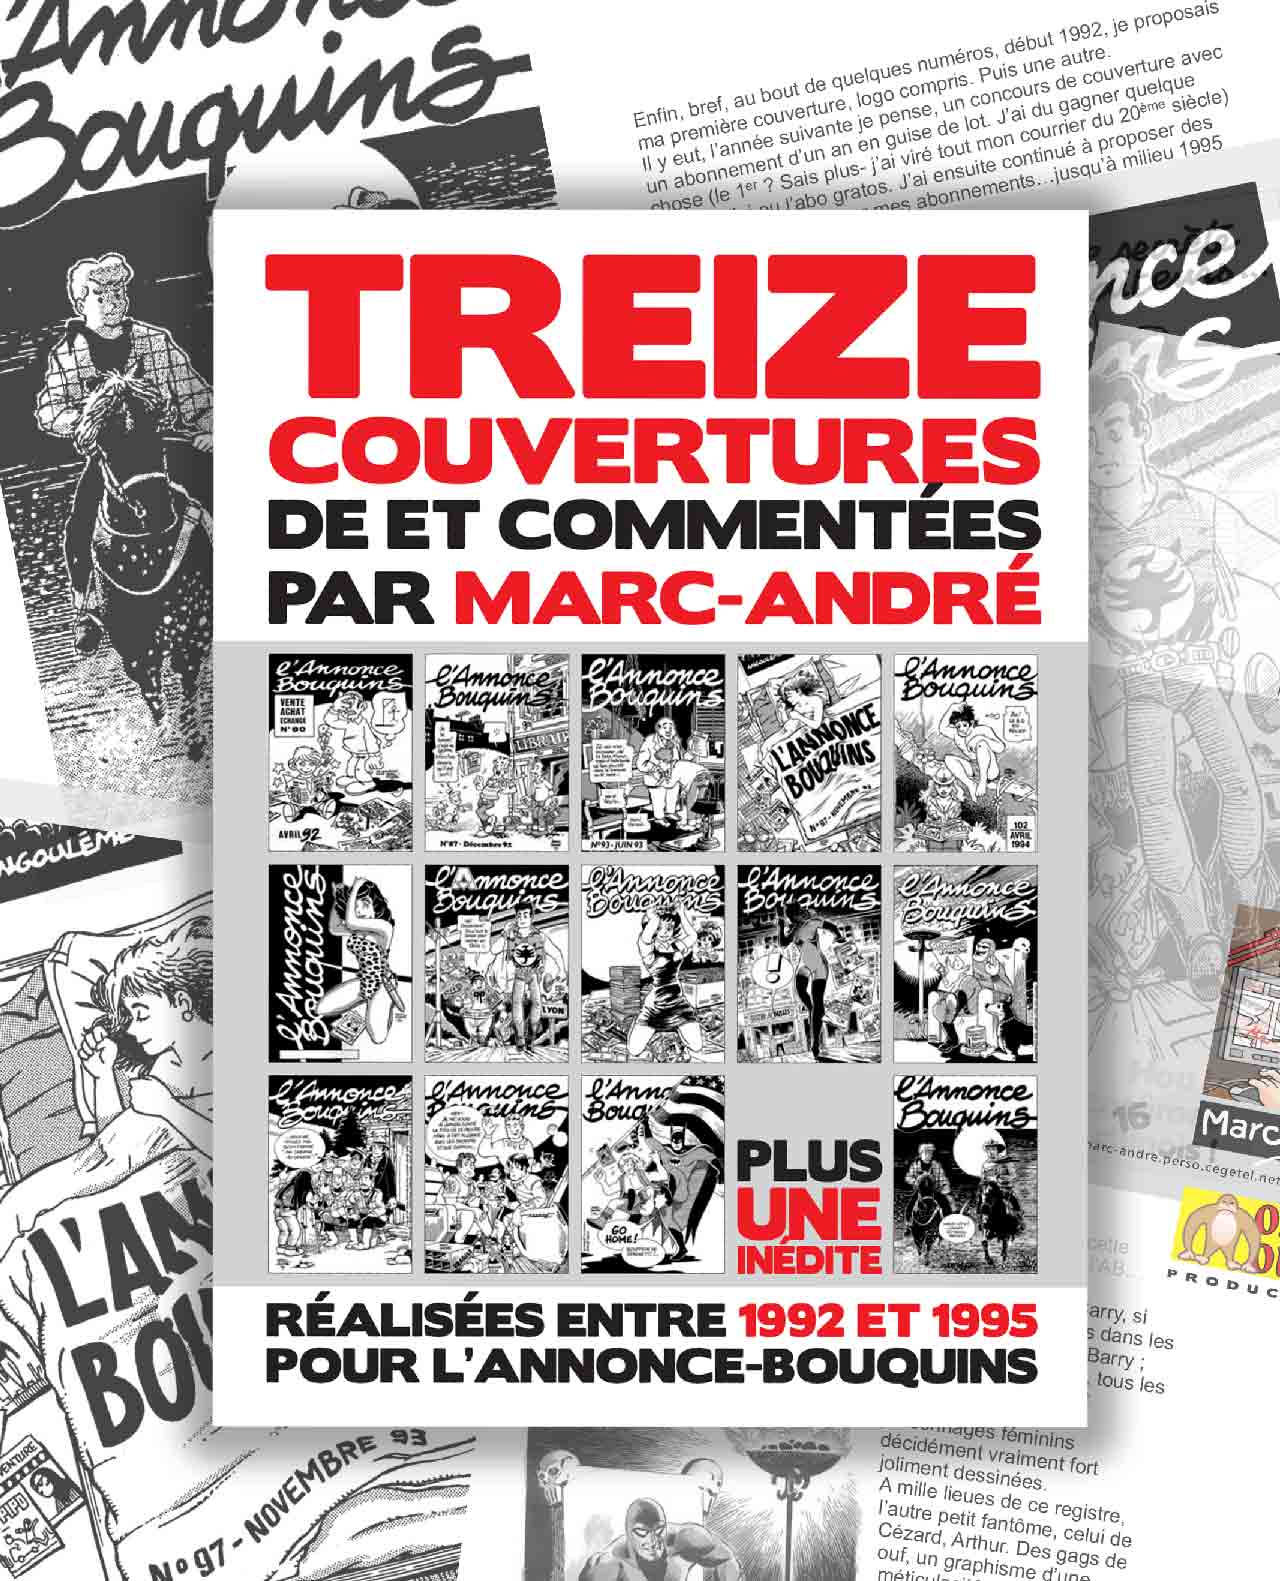 13 couvertures de L'annonce-Bouquins par Marc-André 1998 - 1992-1995 - Bande dessinée - Libourne - Marc-André BD Illustration Graphisme - Limoges